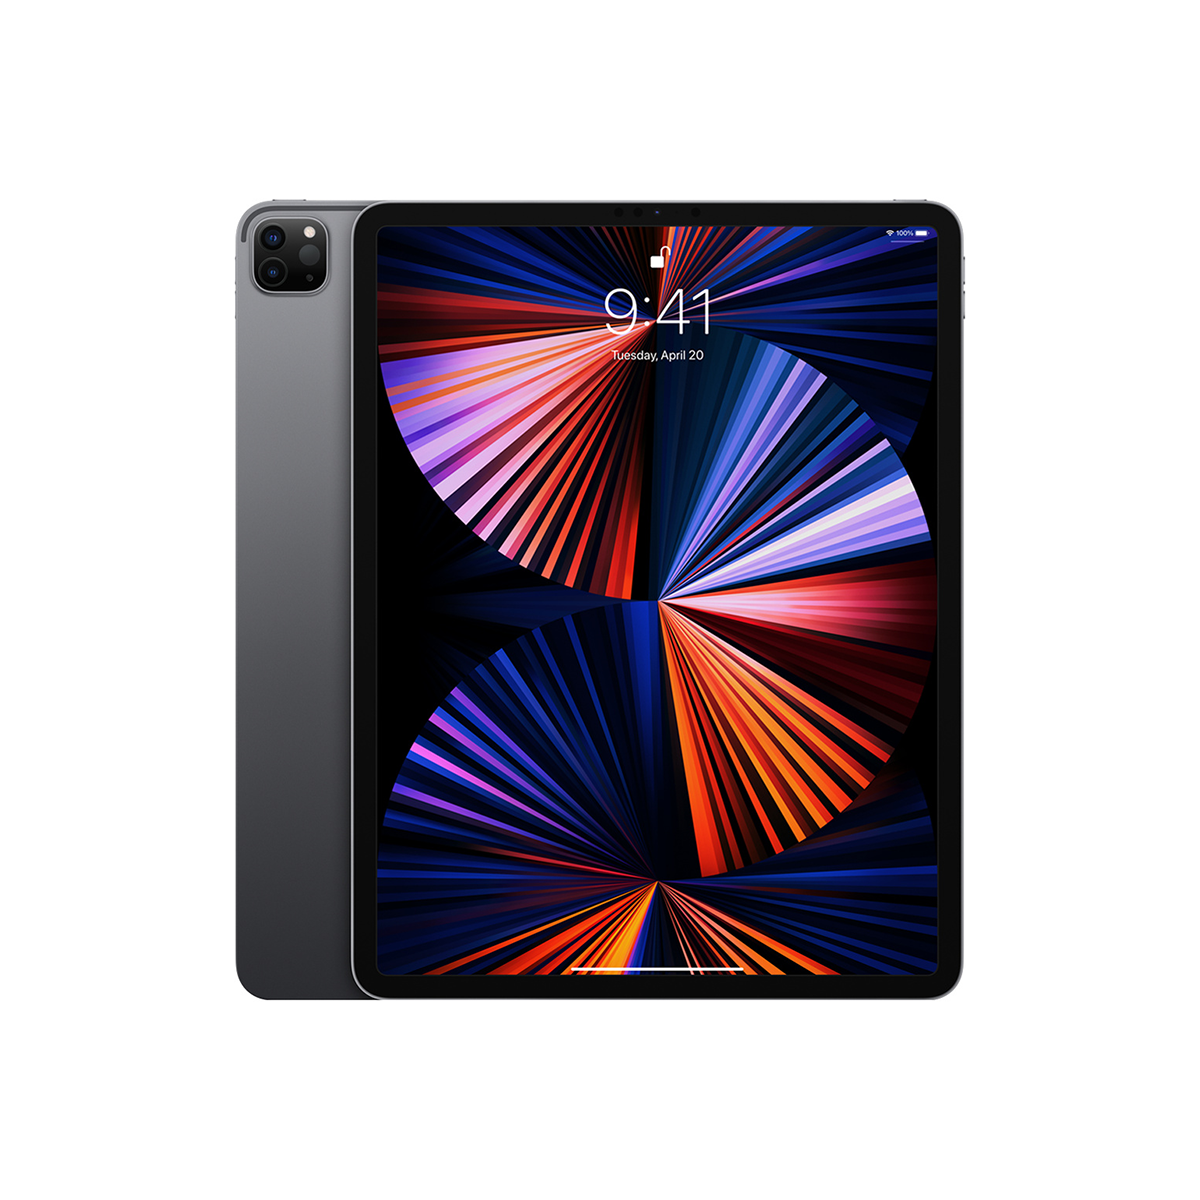  Máy tính bảng Apple iPad Pro 12.9 inch M1 2021 Chính hãng 